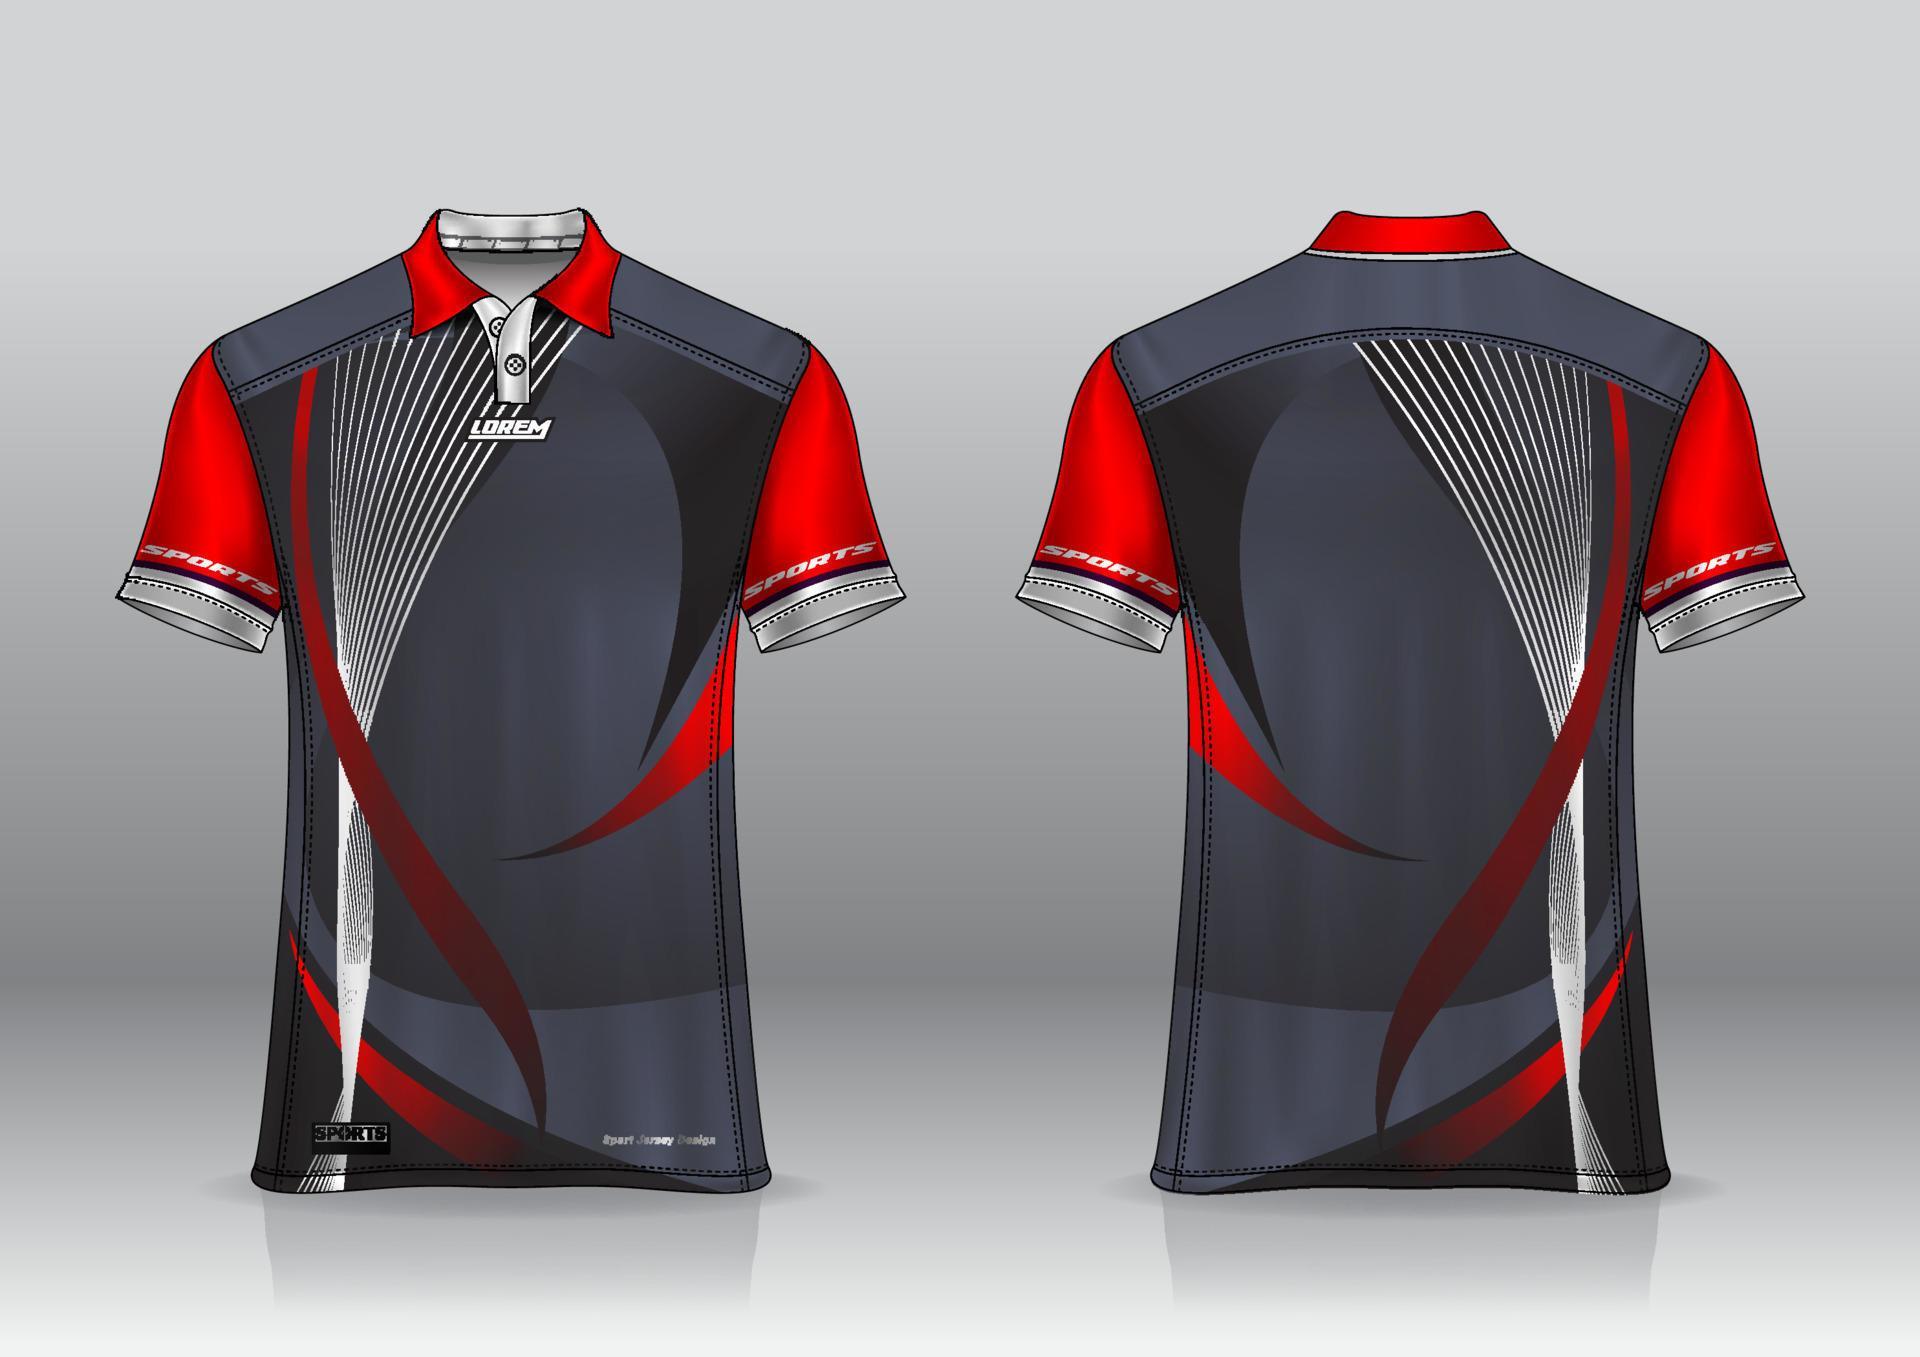 polo shirt uniform design for outdoor sports 8028469 Vector Art at Vecteezy